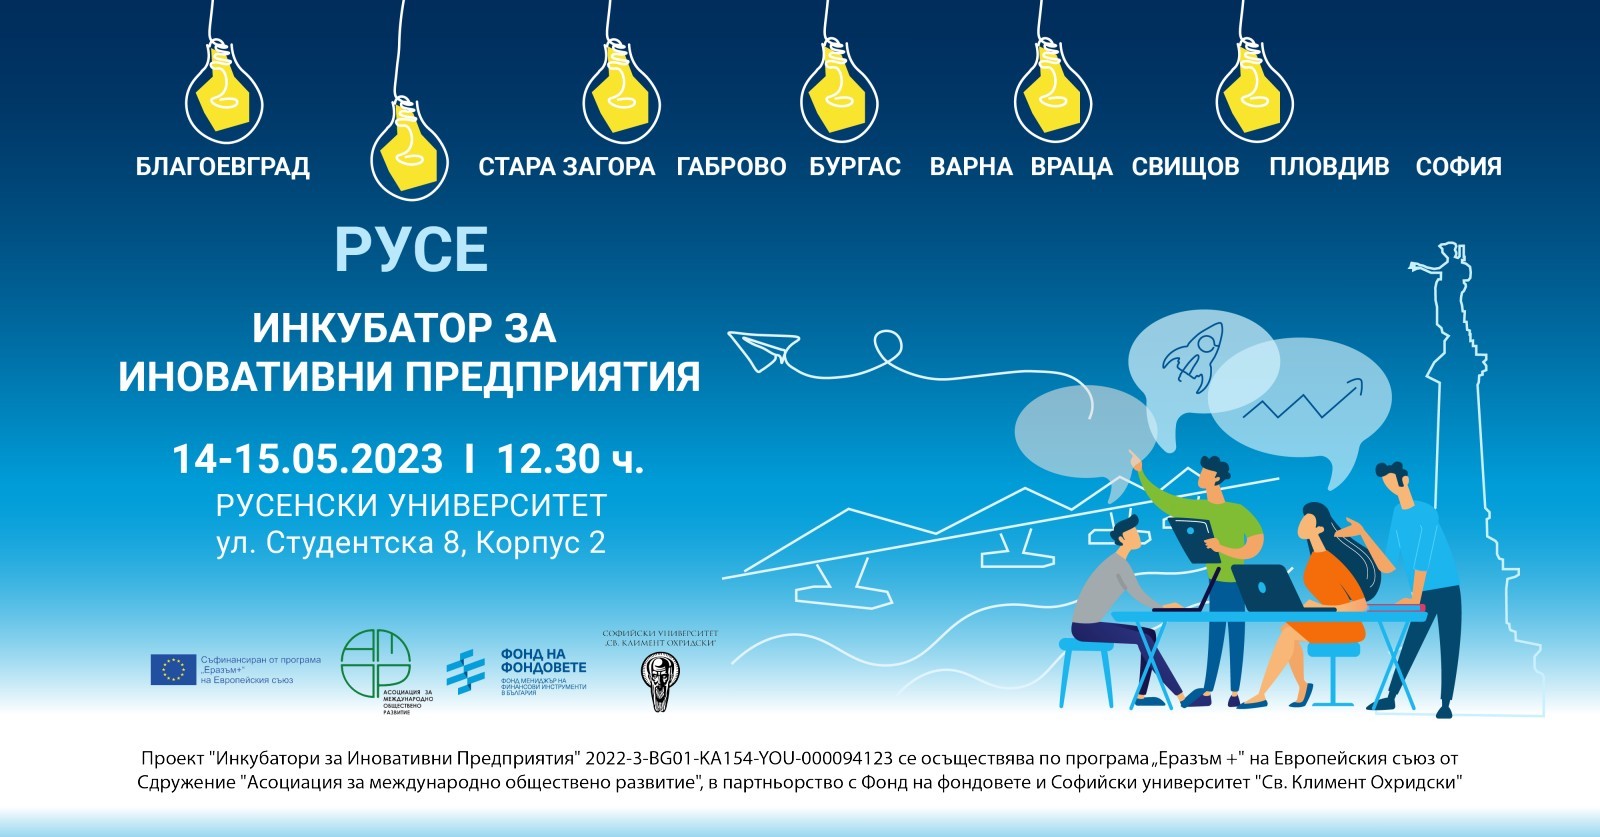 Русенскияг университет ще бъде домакин на събитие от турнето за млади предприемачи в страната